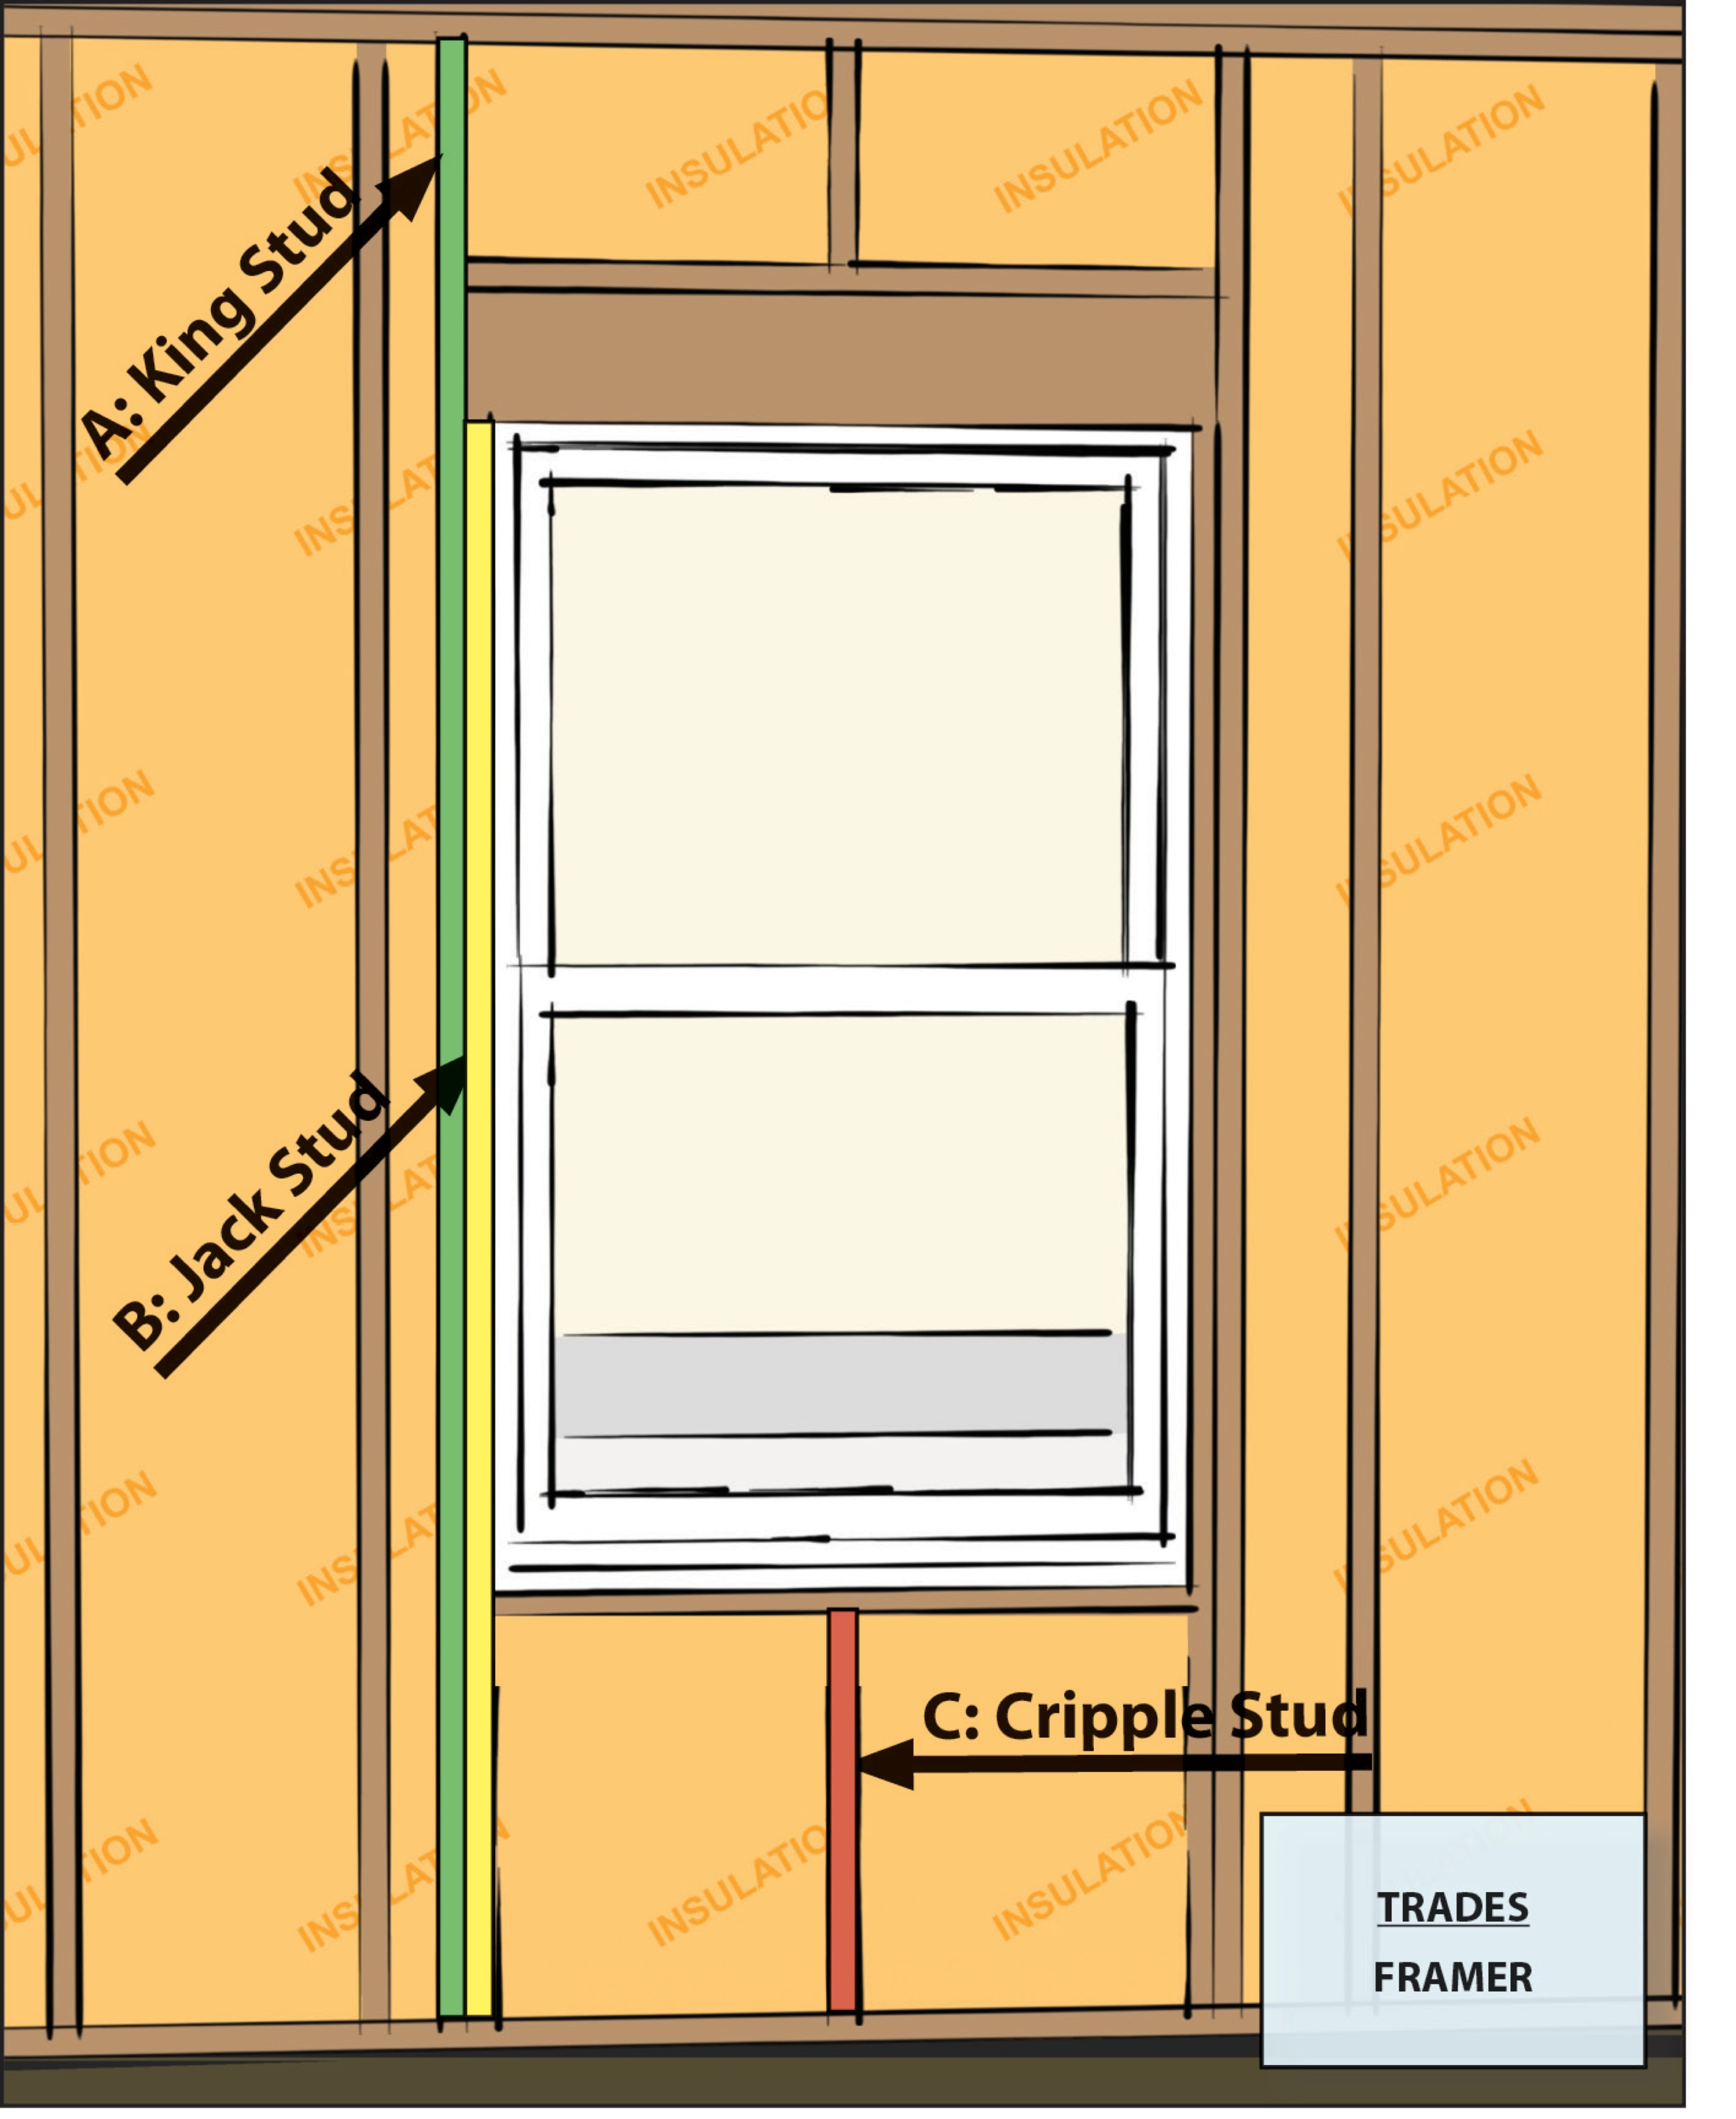 Advanced Framing: Minimal Framing at Doors and Windows